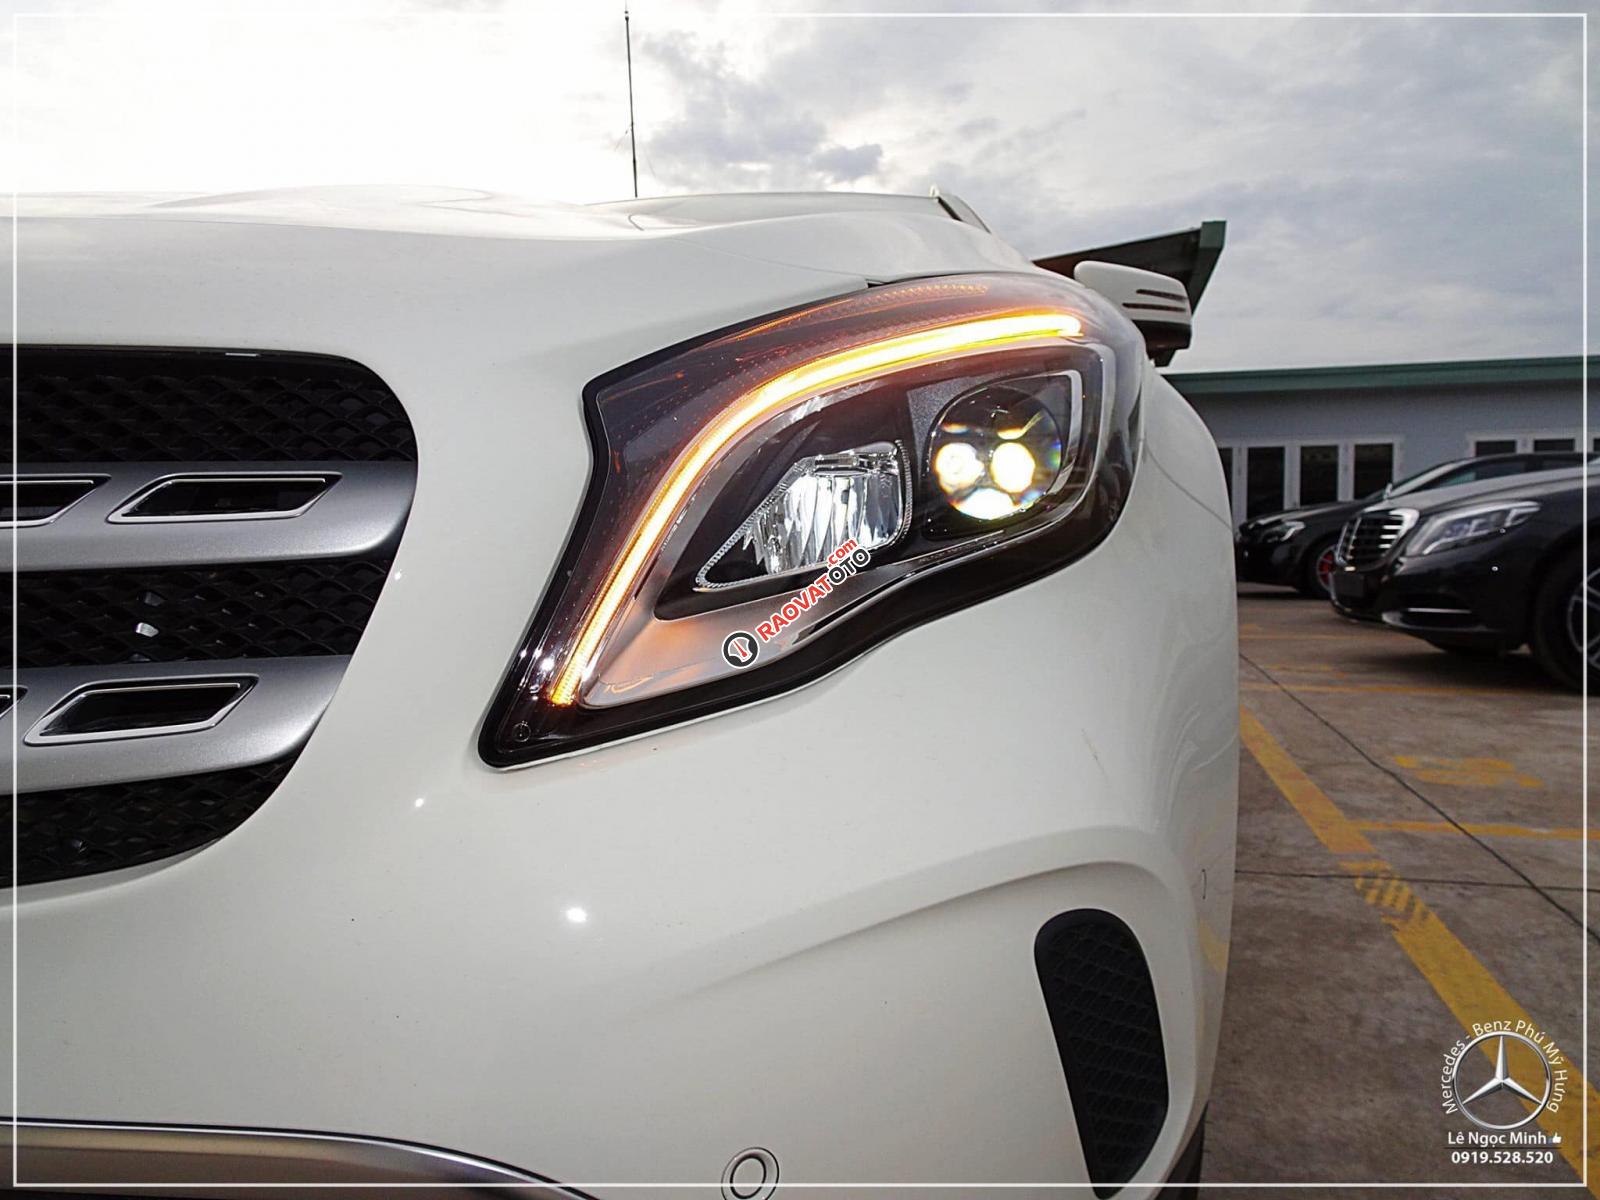 Bán Mercedes GLA 200 new - SUV 5 chỗ nhập khẩu - hỗ trợ ngân hàng 80%, xe giao ngay, LH 0919 528 520-7